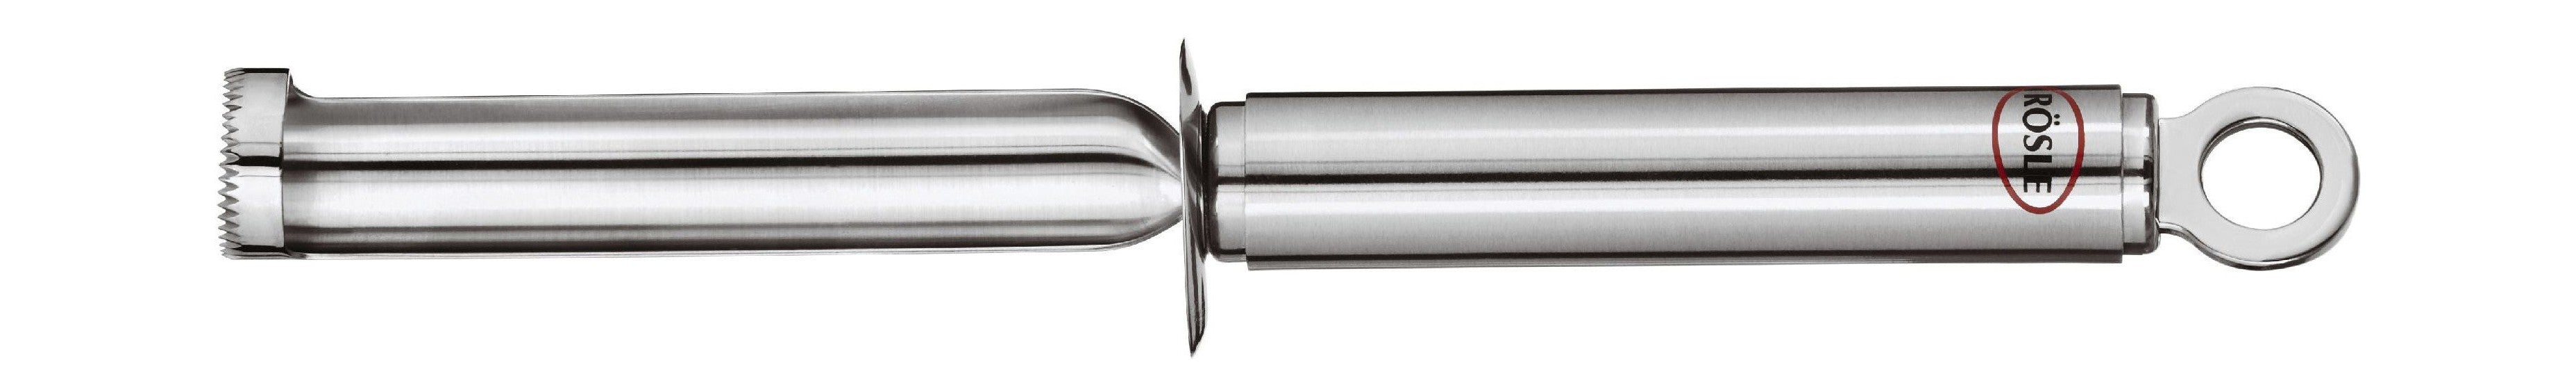 Cuchillo de cocina de núcleo de manzana rösle Ø 2 x 22.5 cm